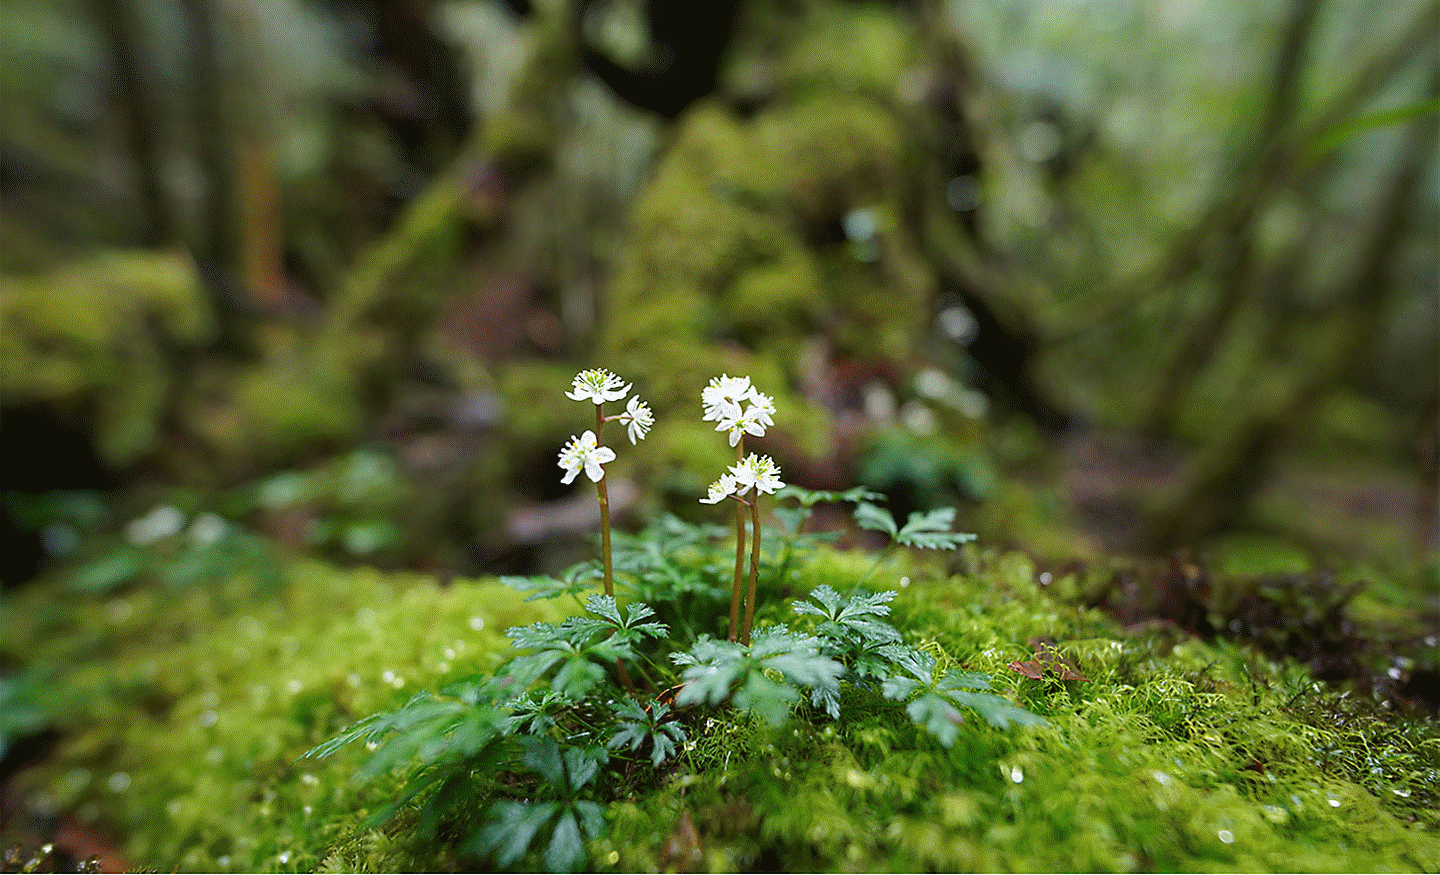 Immagina un piccolo fiore sopra un sasso, nel bosco, perfettamente a fuoco mentre lo sfondo e la parte anteriore sono sfocati